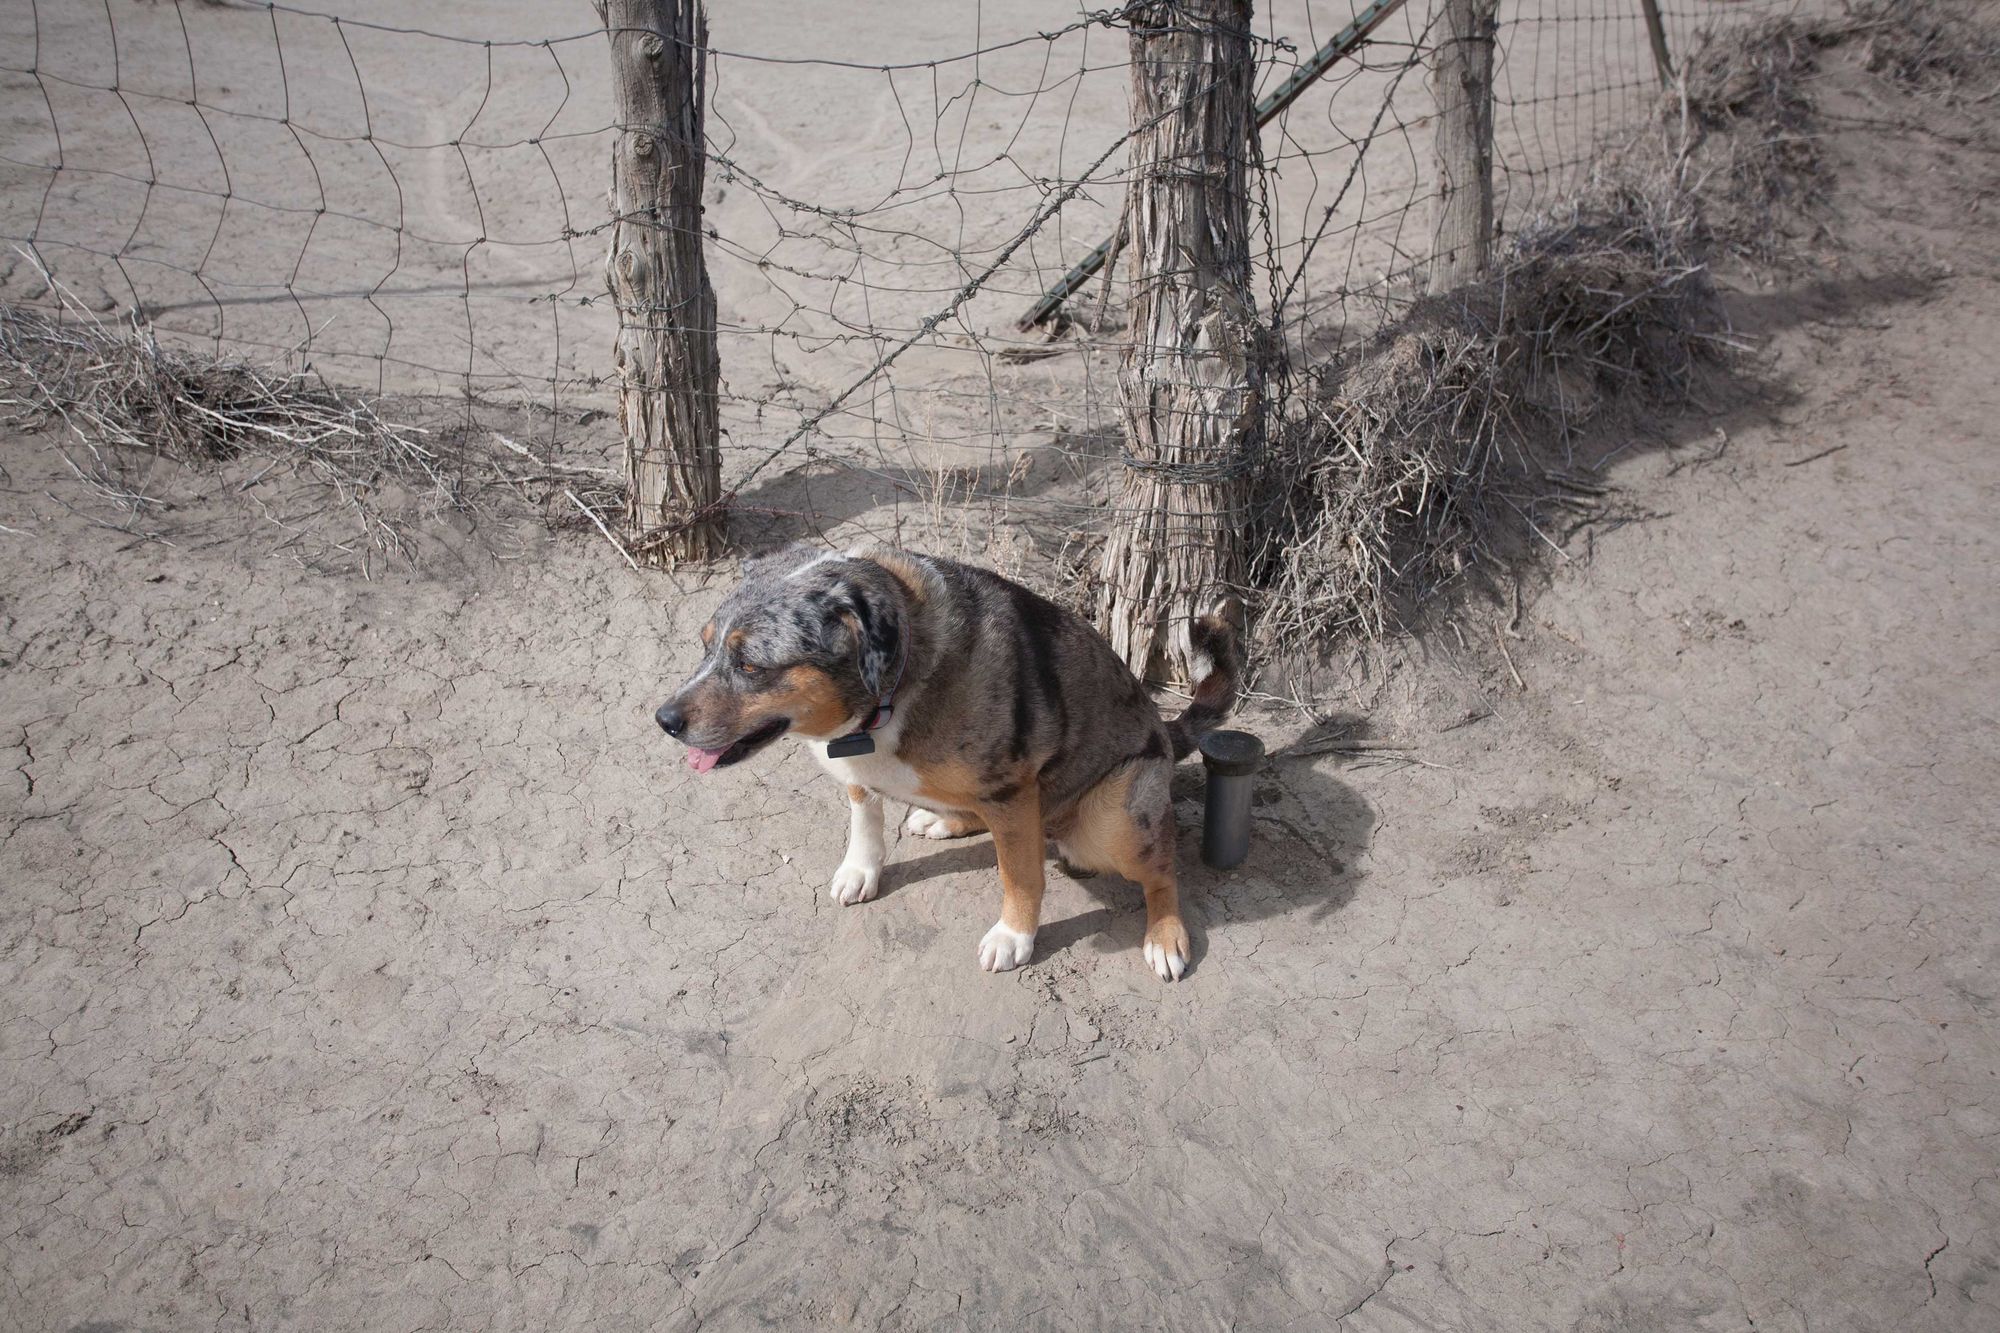 Dog-Friendly Day Trip to New Mexico's Bisti Badlands